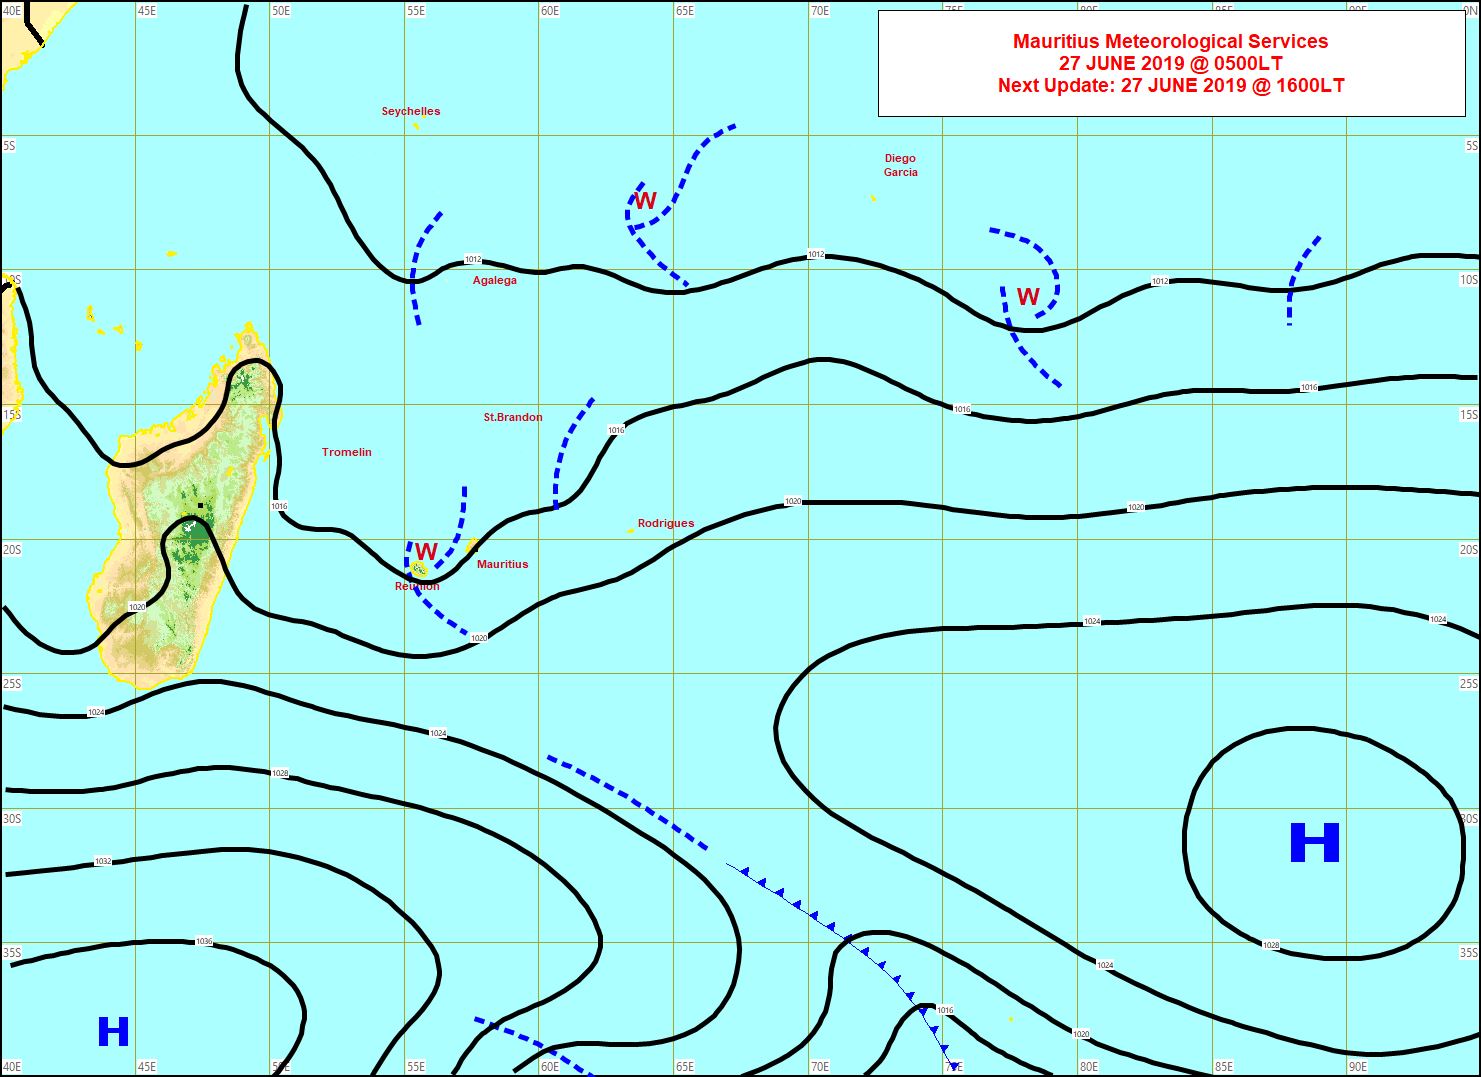 Analyse de la situation de surface ce matin. Toujours un peu d'instabilité(w) entre les Iles Soeurs. L'anticyclone(1038hpa) actuellement au sud de la Grande Ile va venir se positionner au sud des Mascareignes ces deux prochains jours. MMS